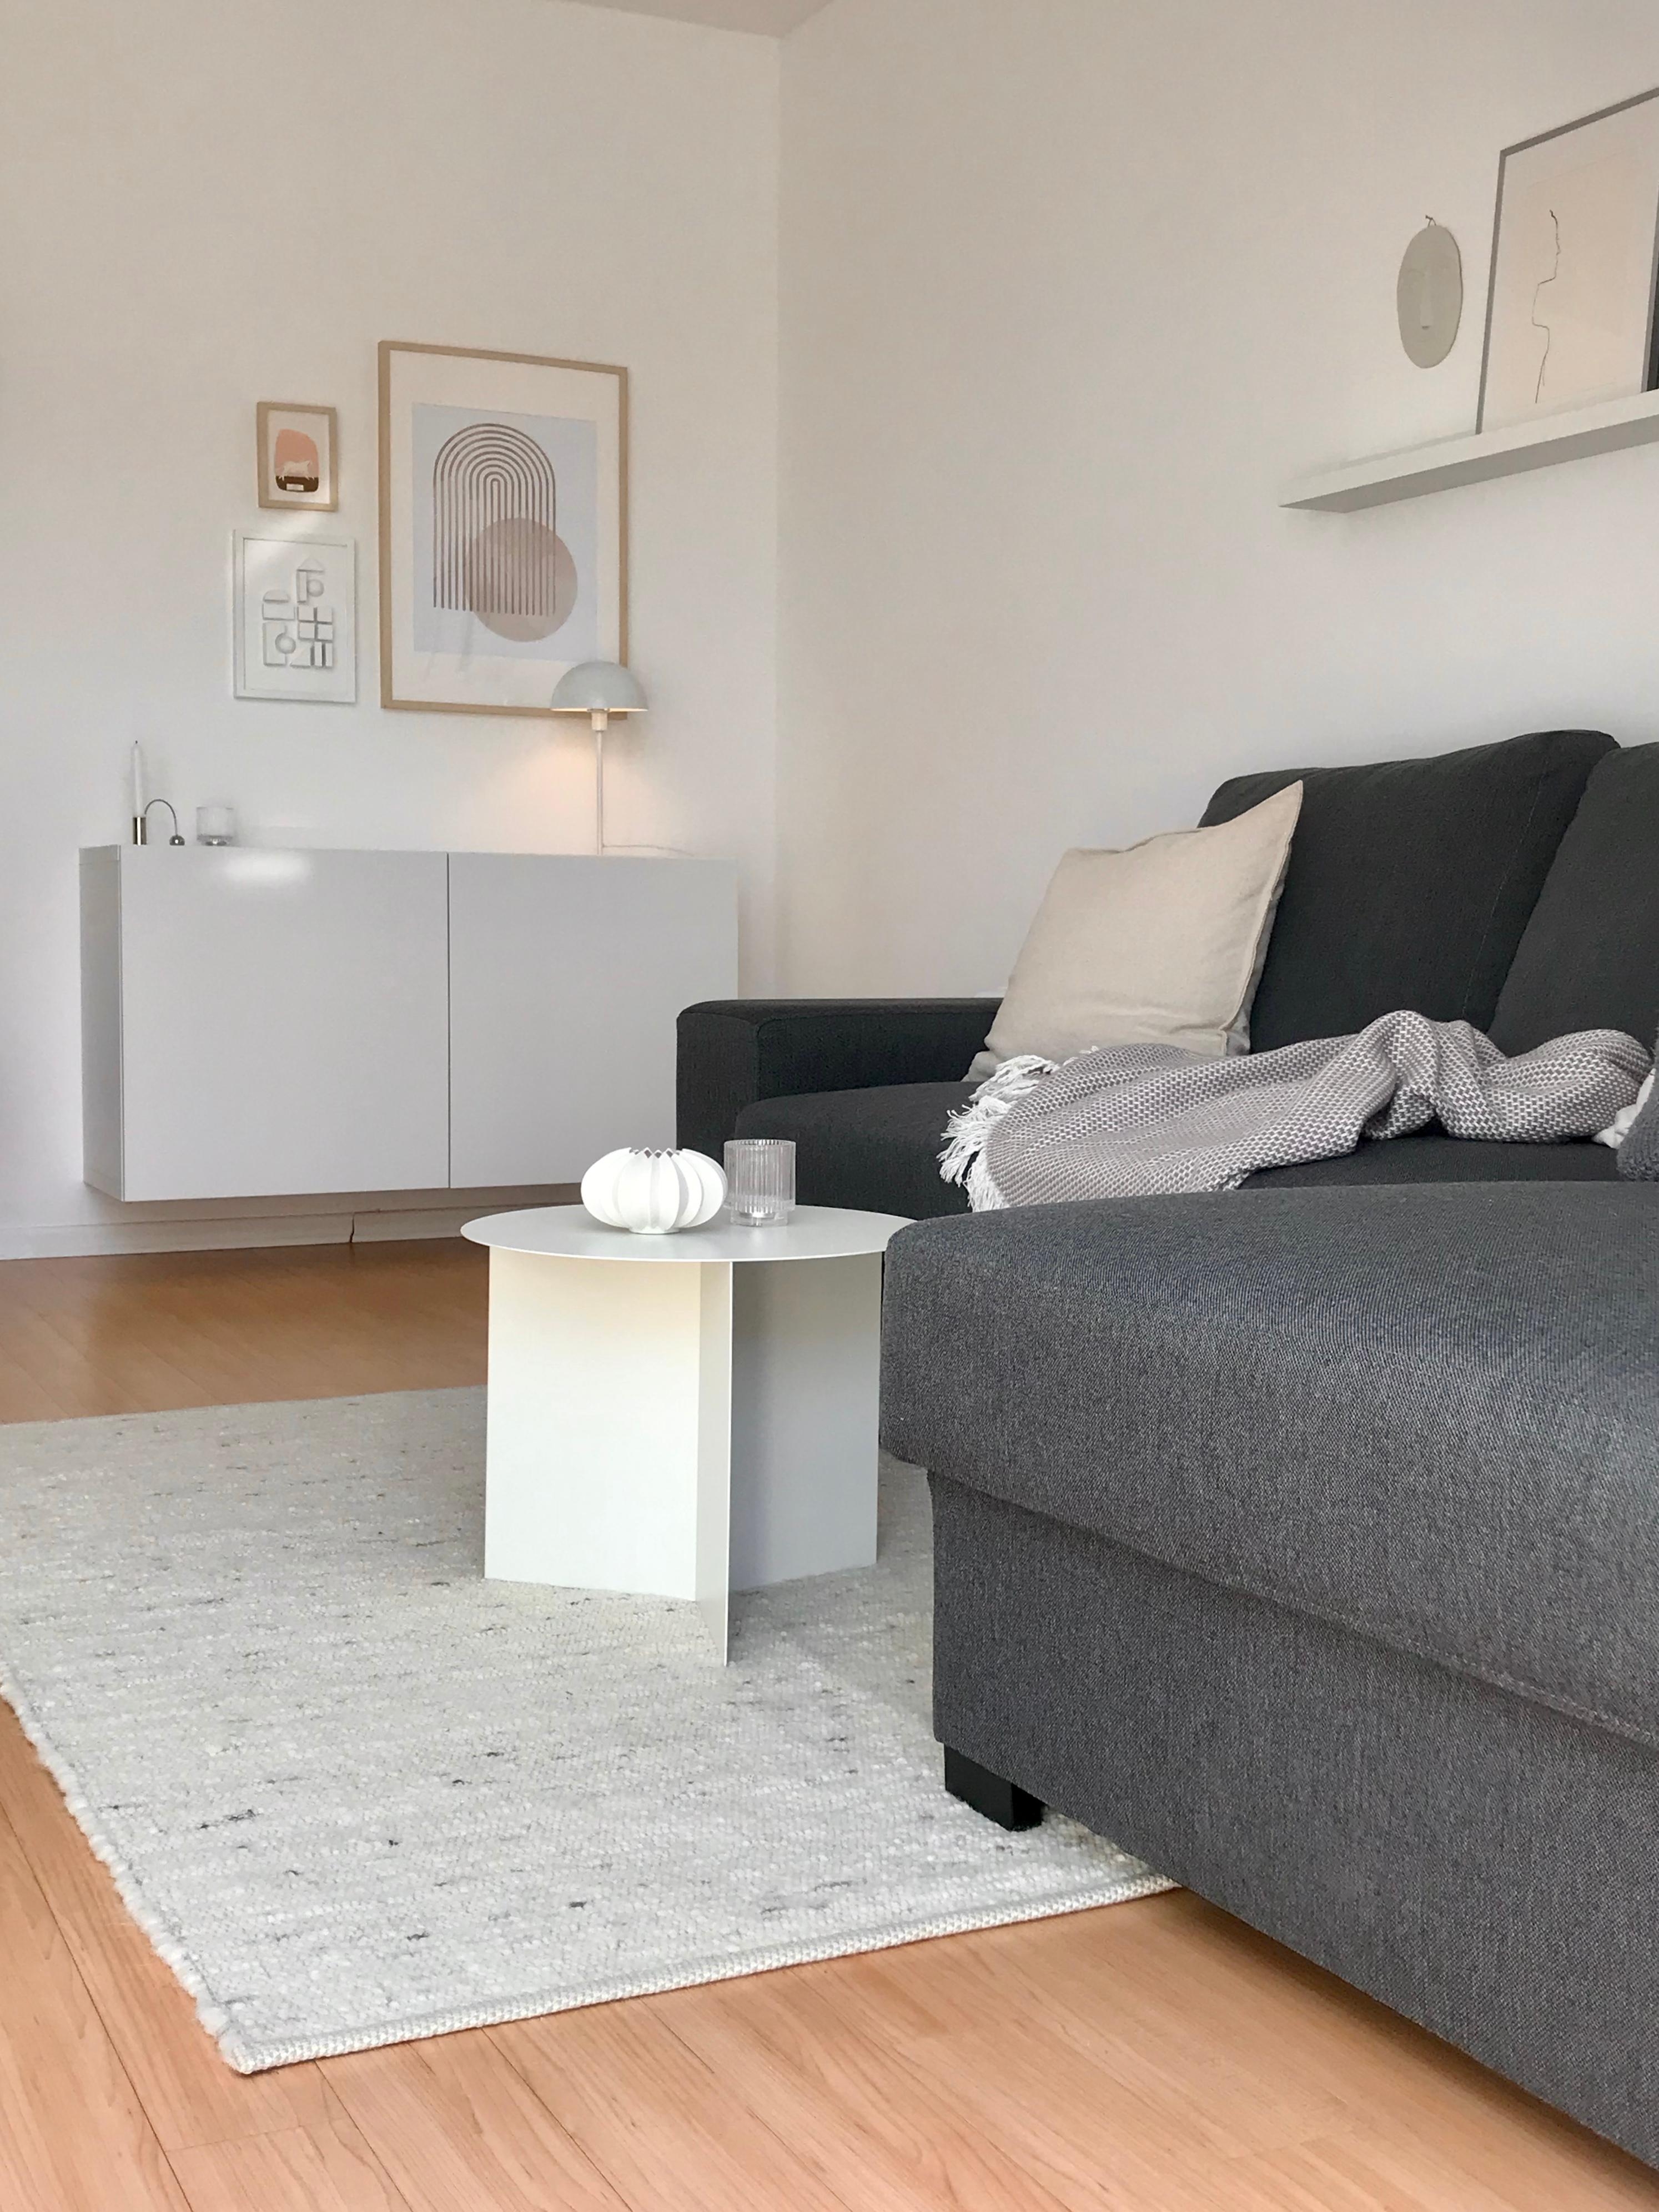 Mal eine andere Perspektive #wohnzimmer #couchtisch #minimalistisch #hygge 